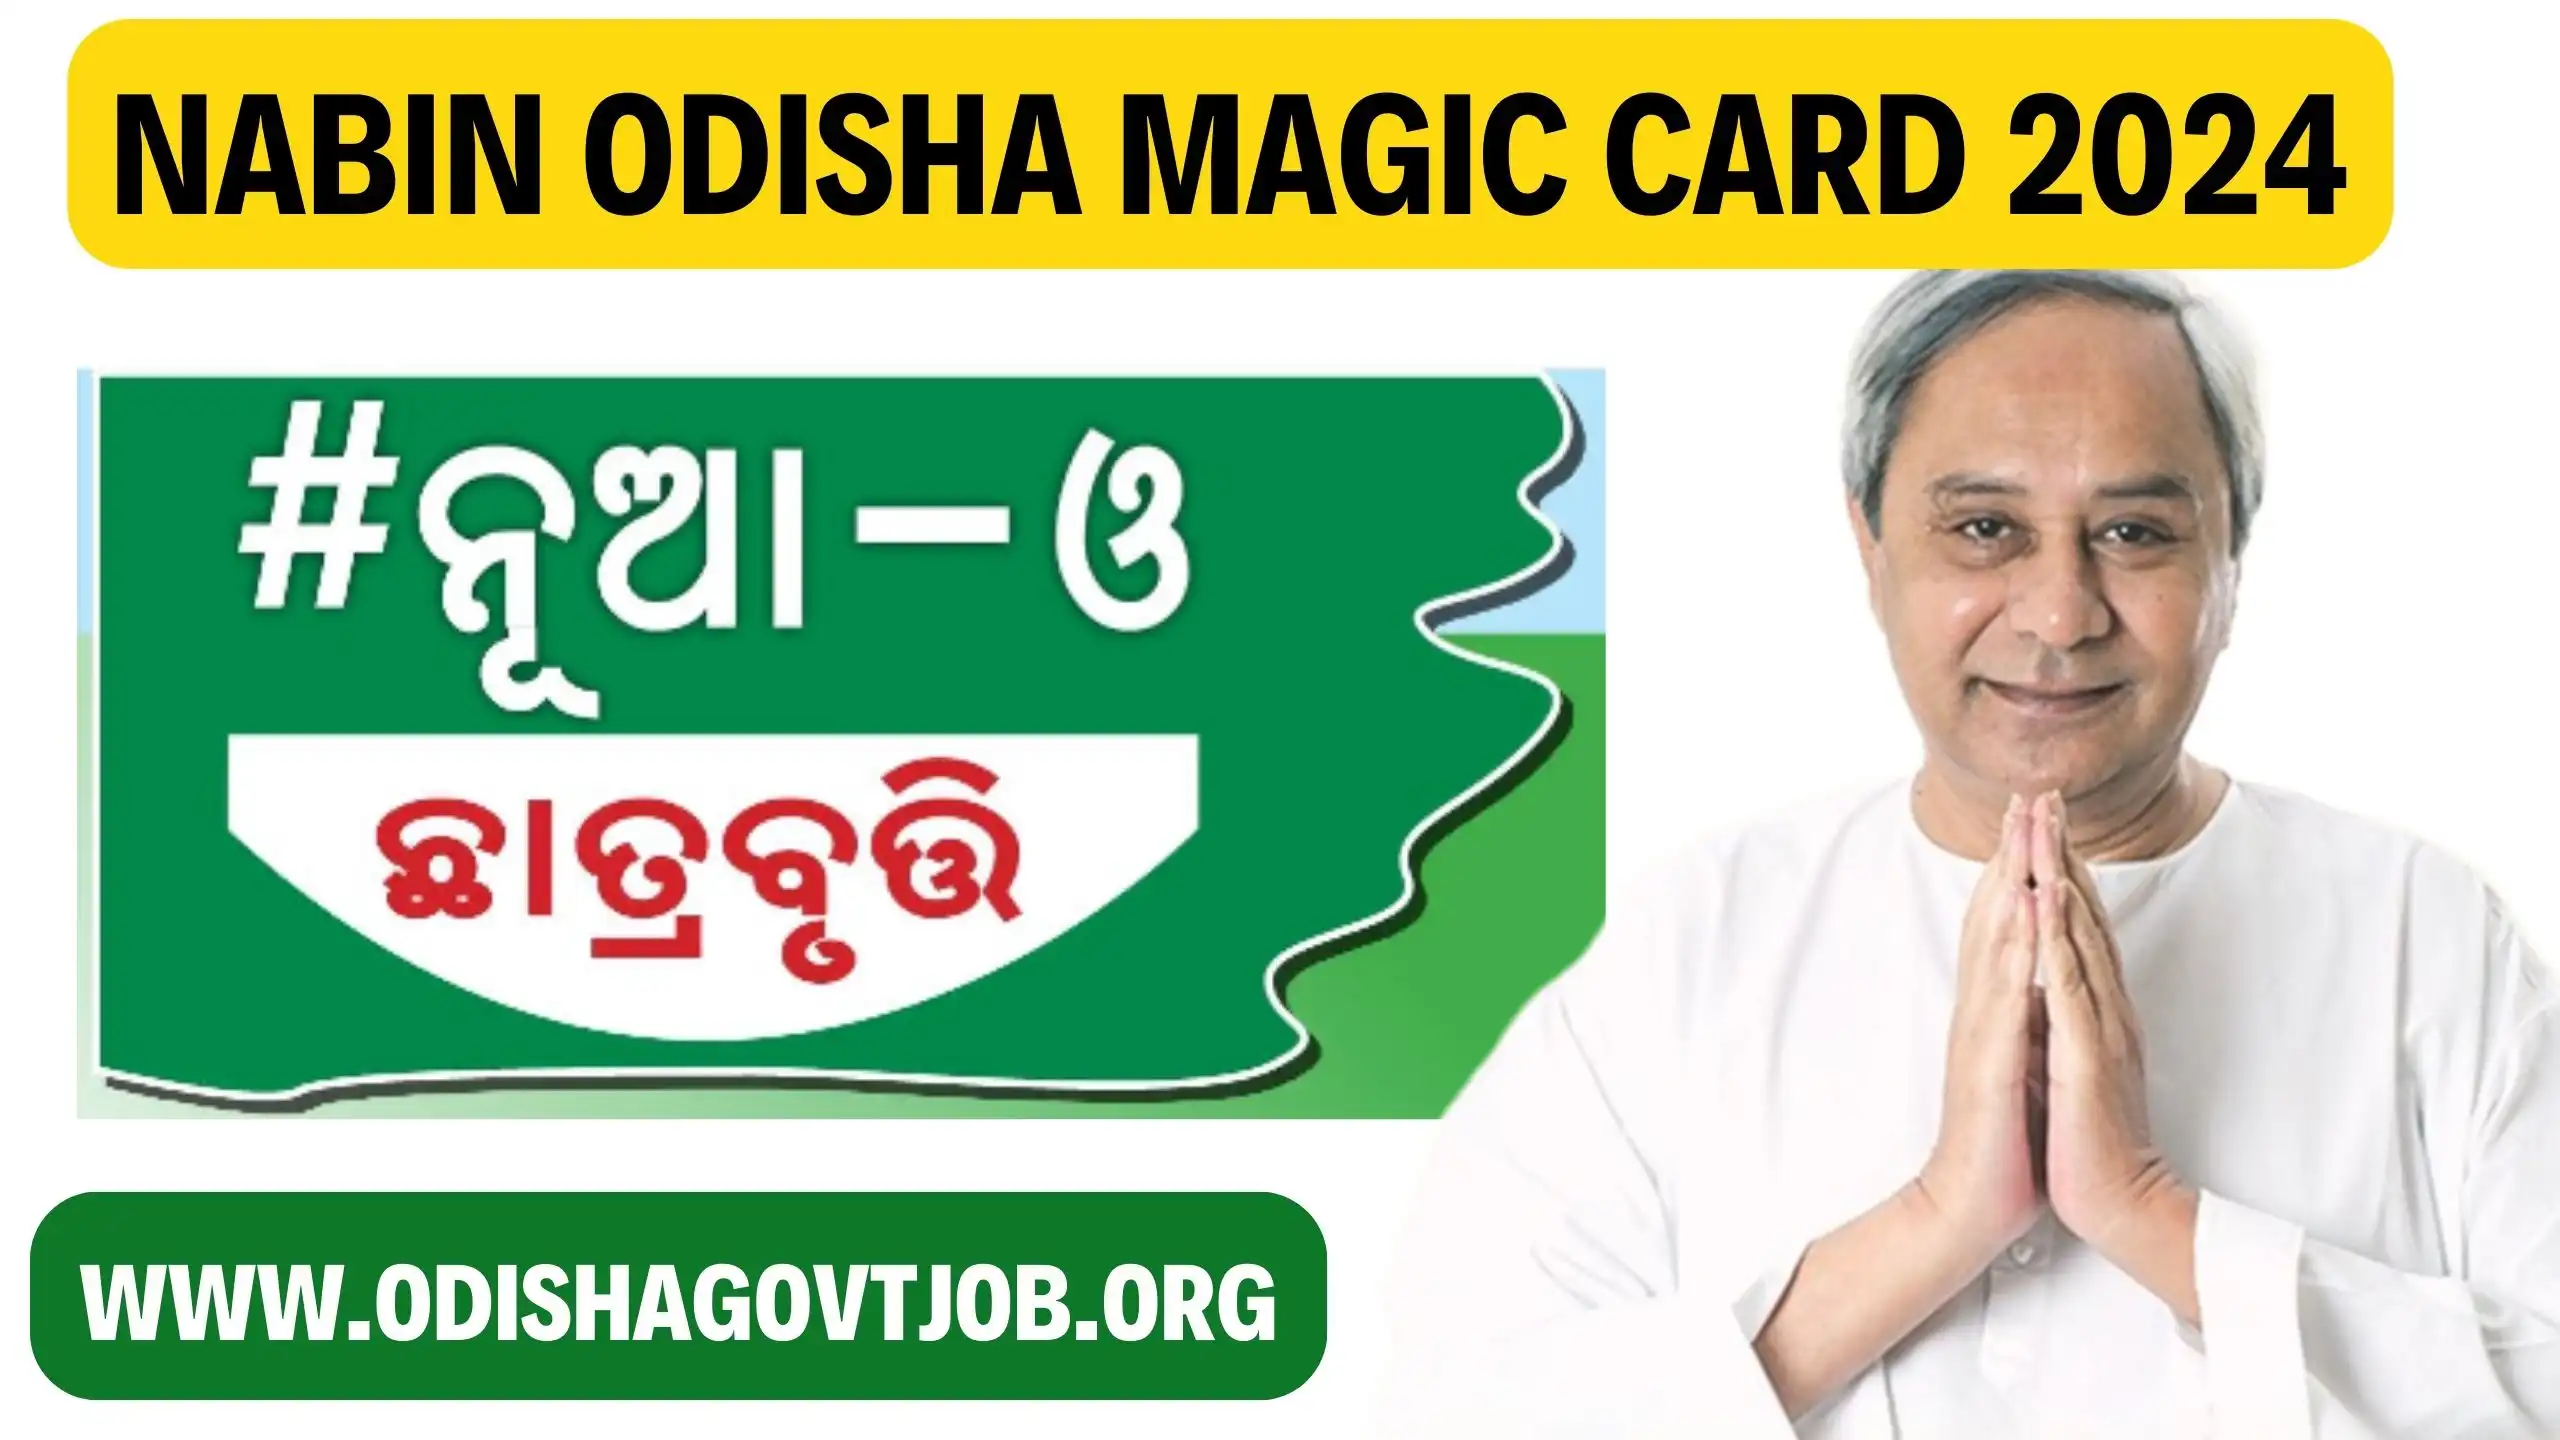 Nabin Odisha Magic Card 2024